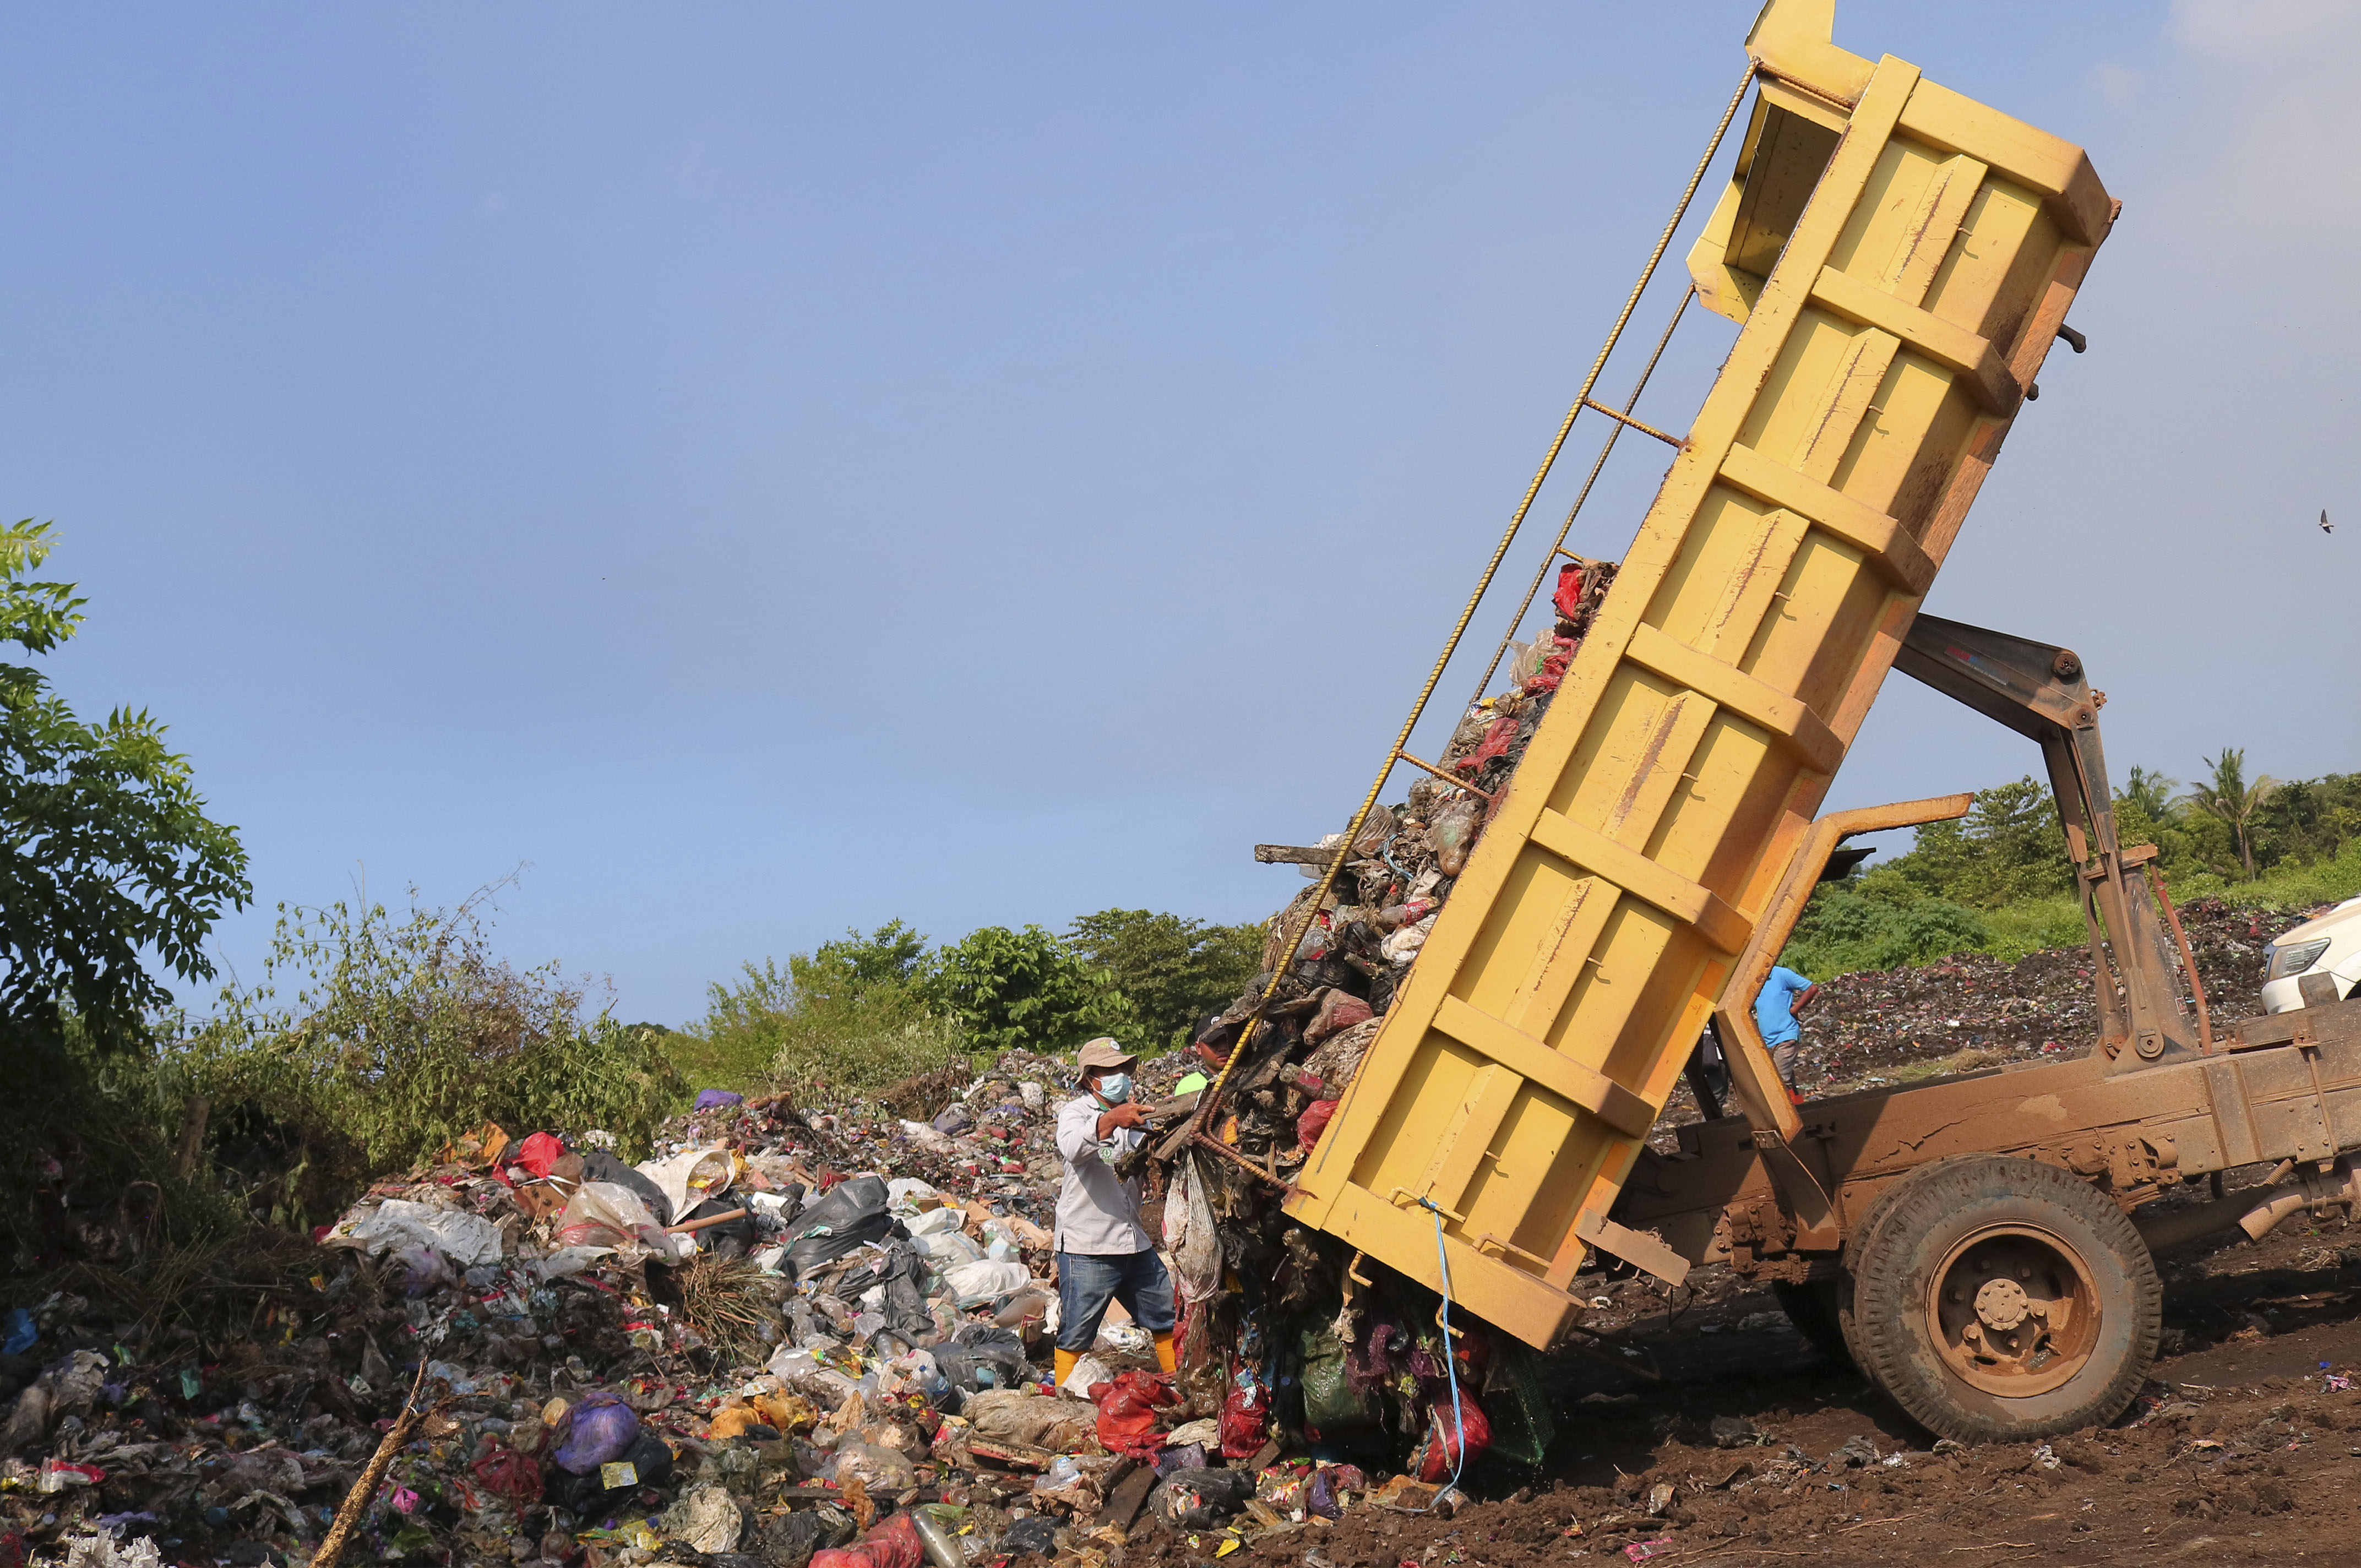 Bahodopi Darurat Sampah, Camat Harap Pemerintah Ikut Membantu Mengatasi Persoalan Ini